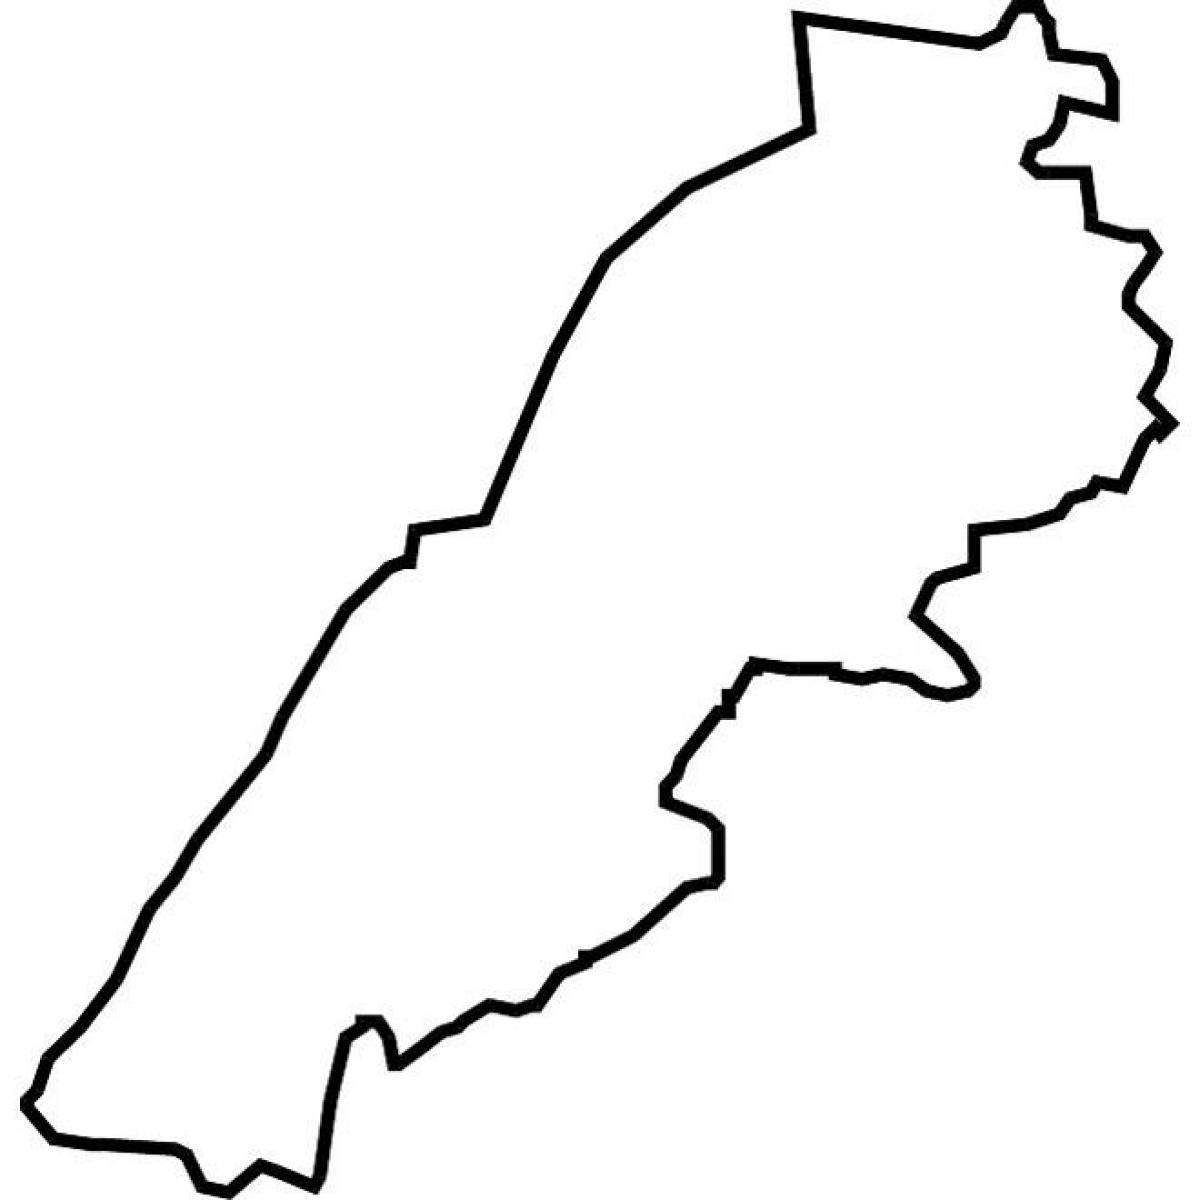 kart over Libanon vektor kart